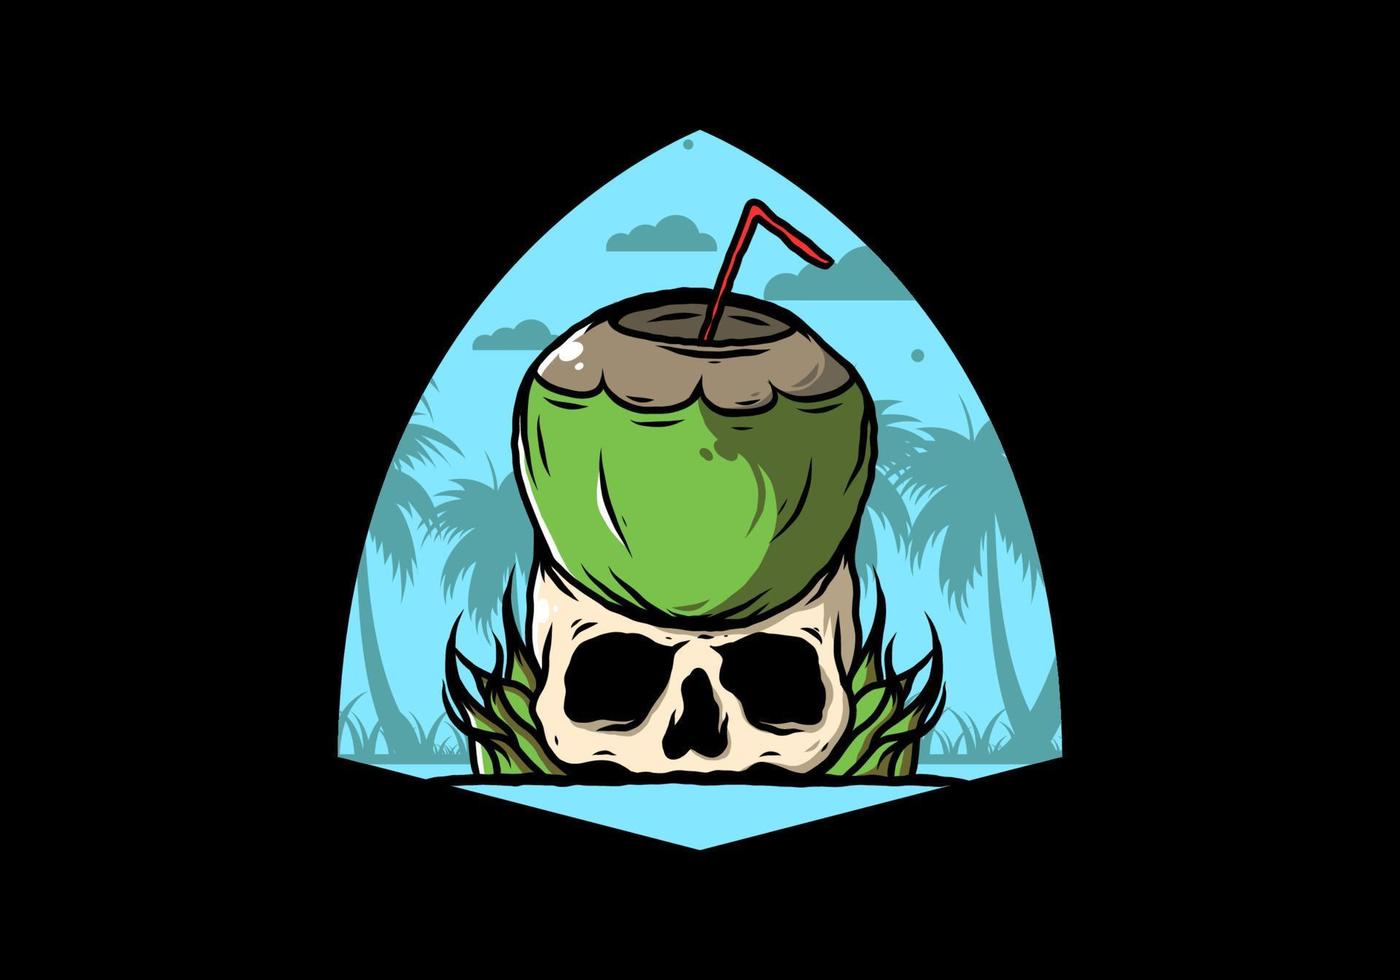 bebida de coco na ilustração do crânio humano vetor